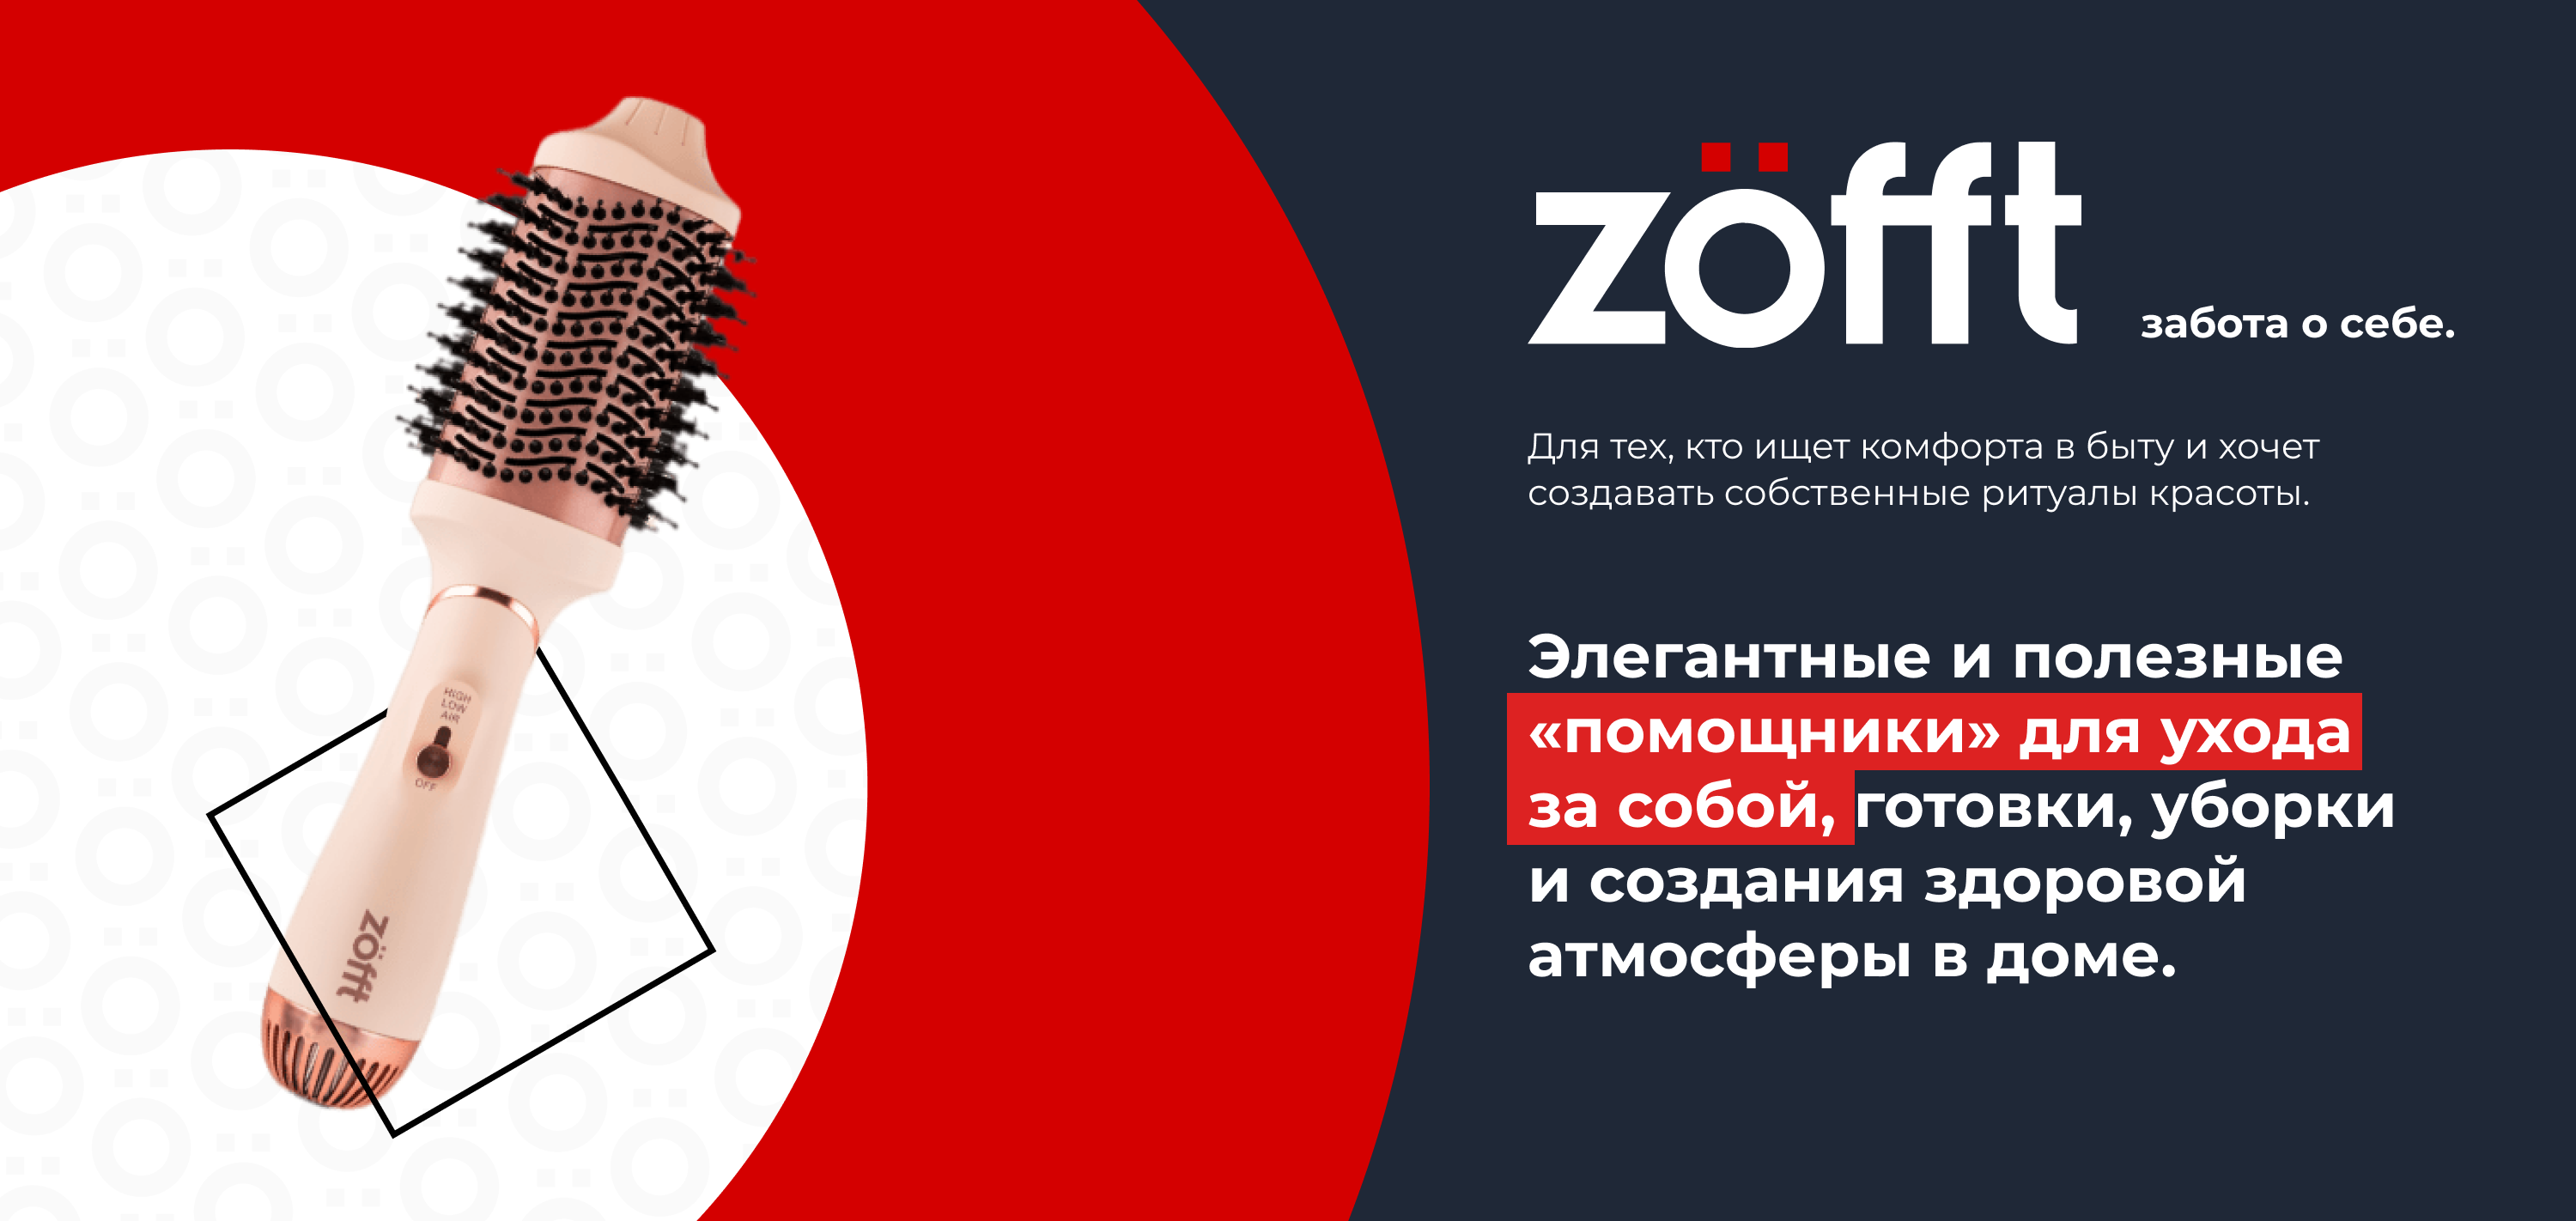 staff/реклама для zofft - горизонтальный.png